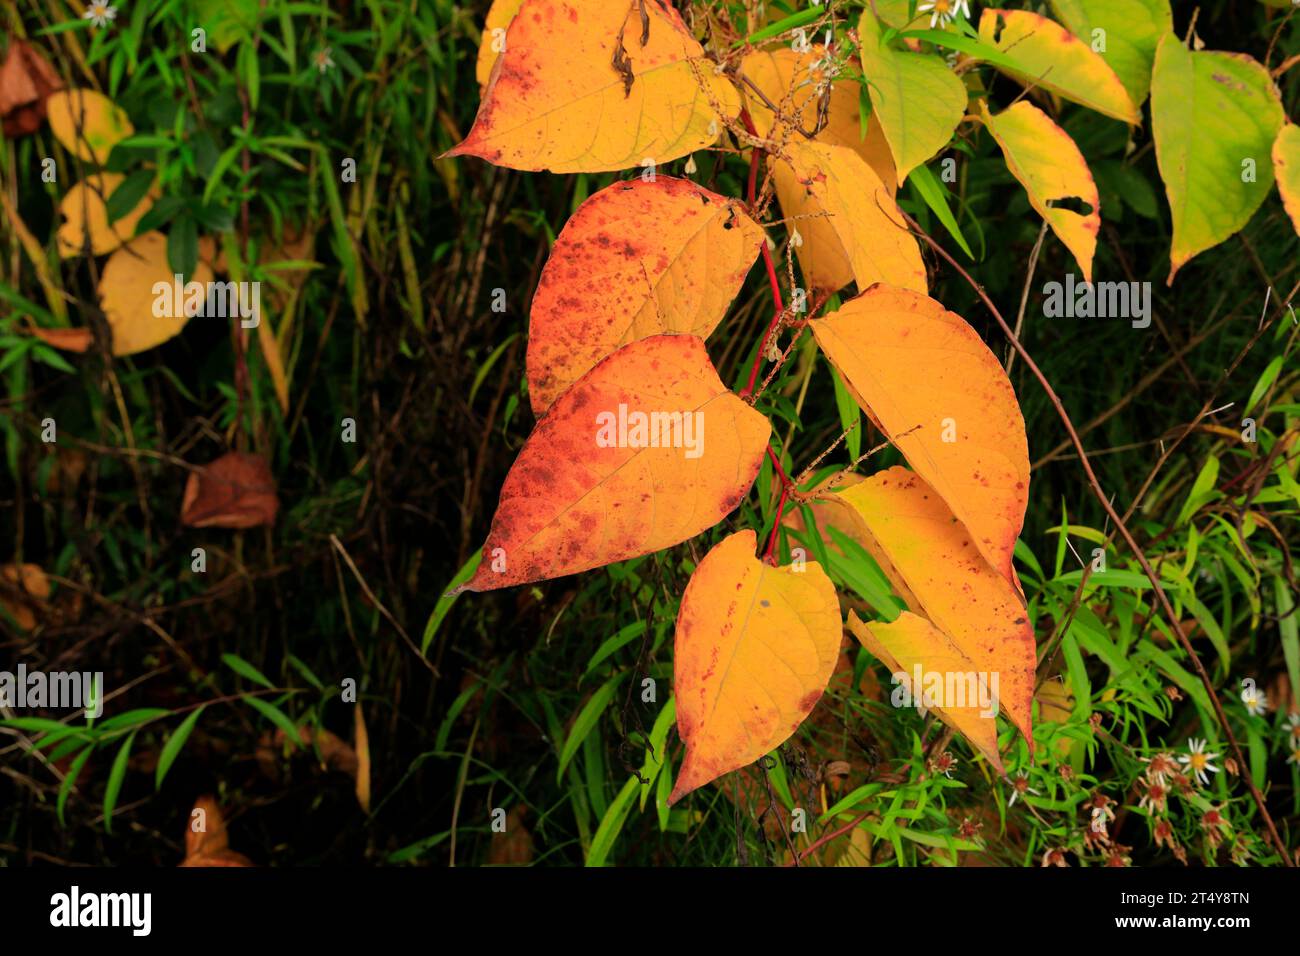 Nouweed japonaise Reynoutria japonica, automne, pays de Galles. Banque D'Images